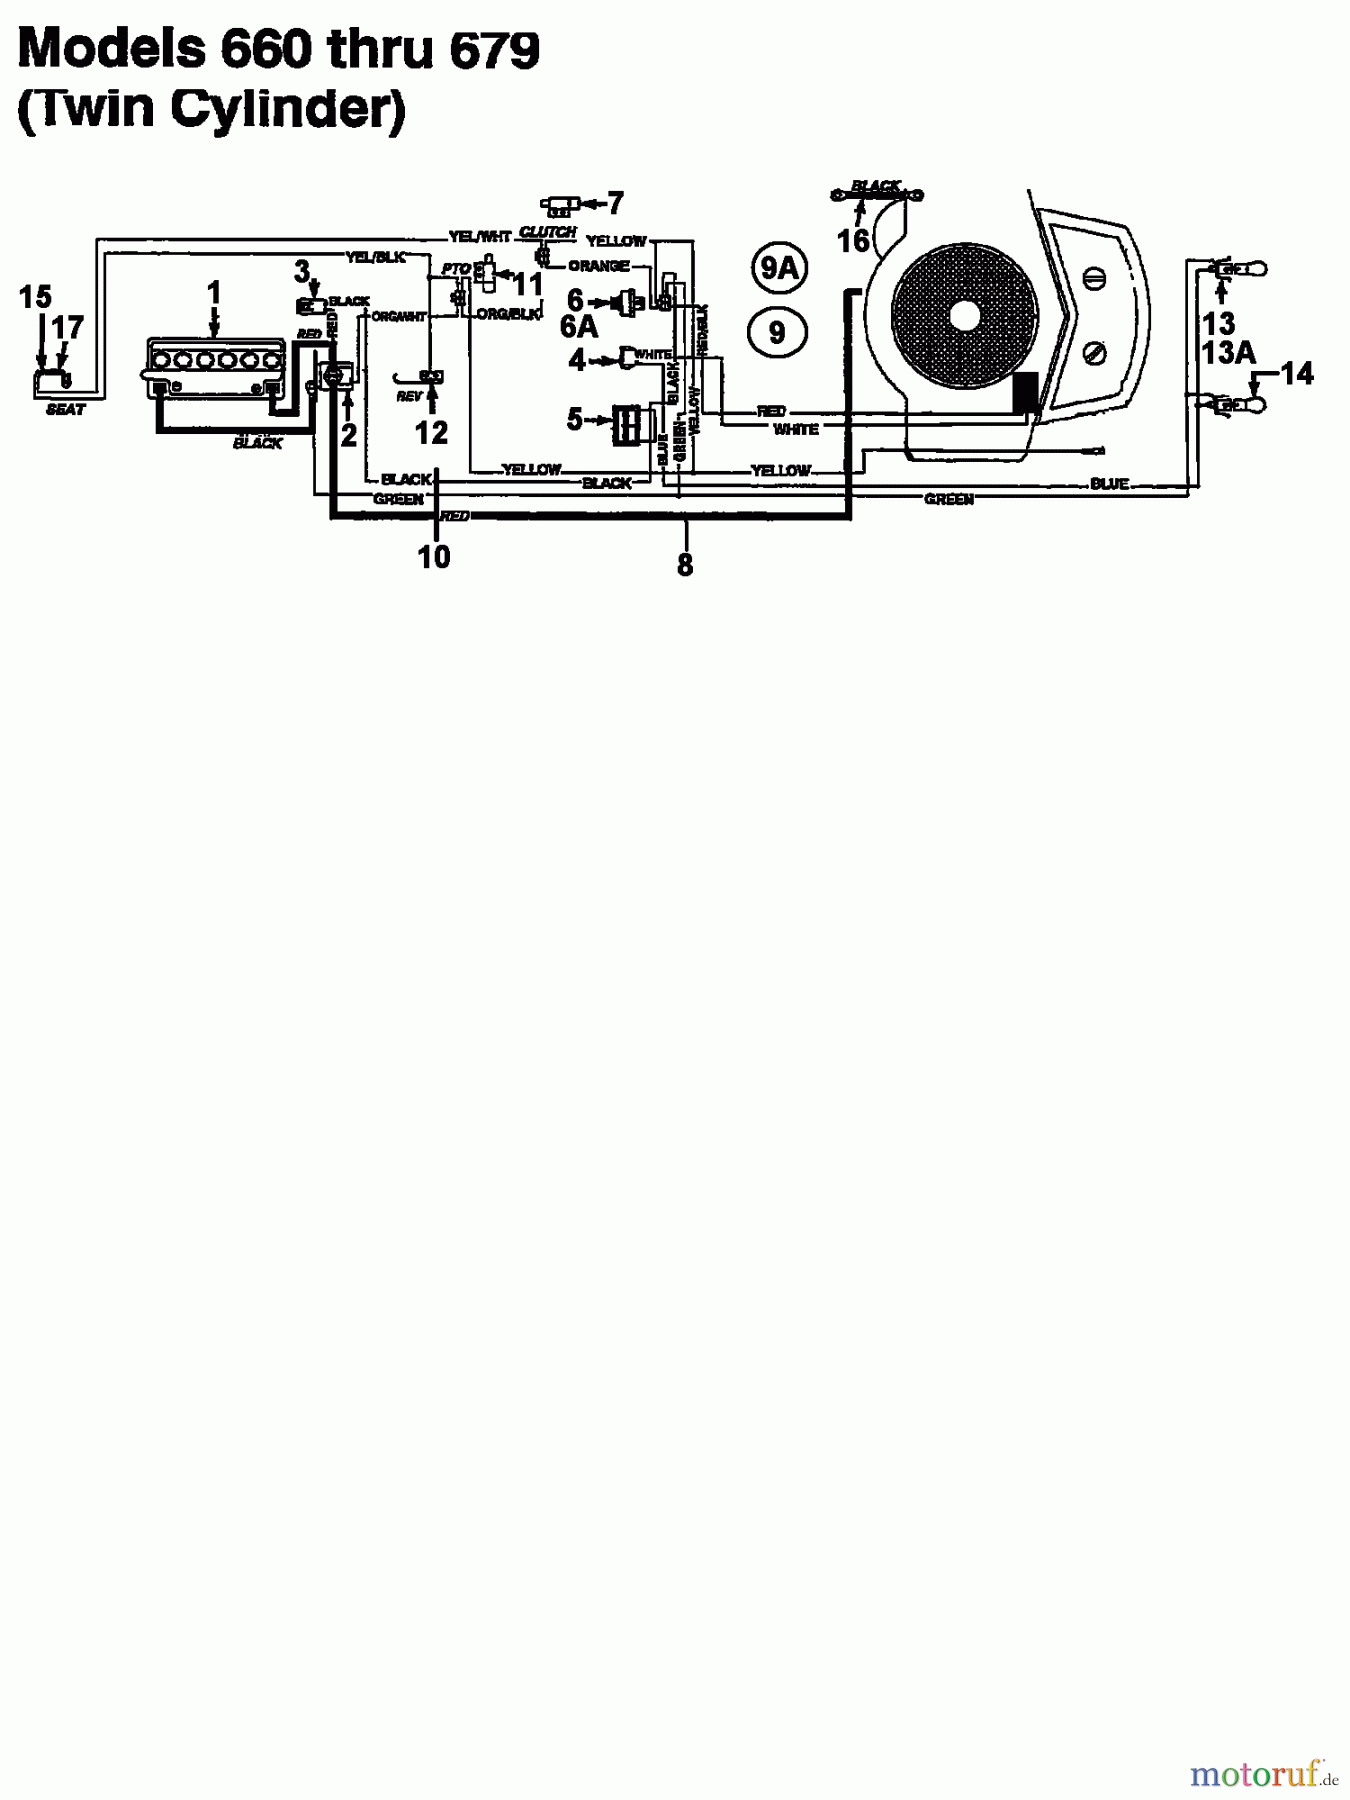  Florica Tracteurs de pelouse 12/76 HN 133I679C638  (1993) Plan électrique 2 cylindre